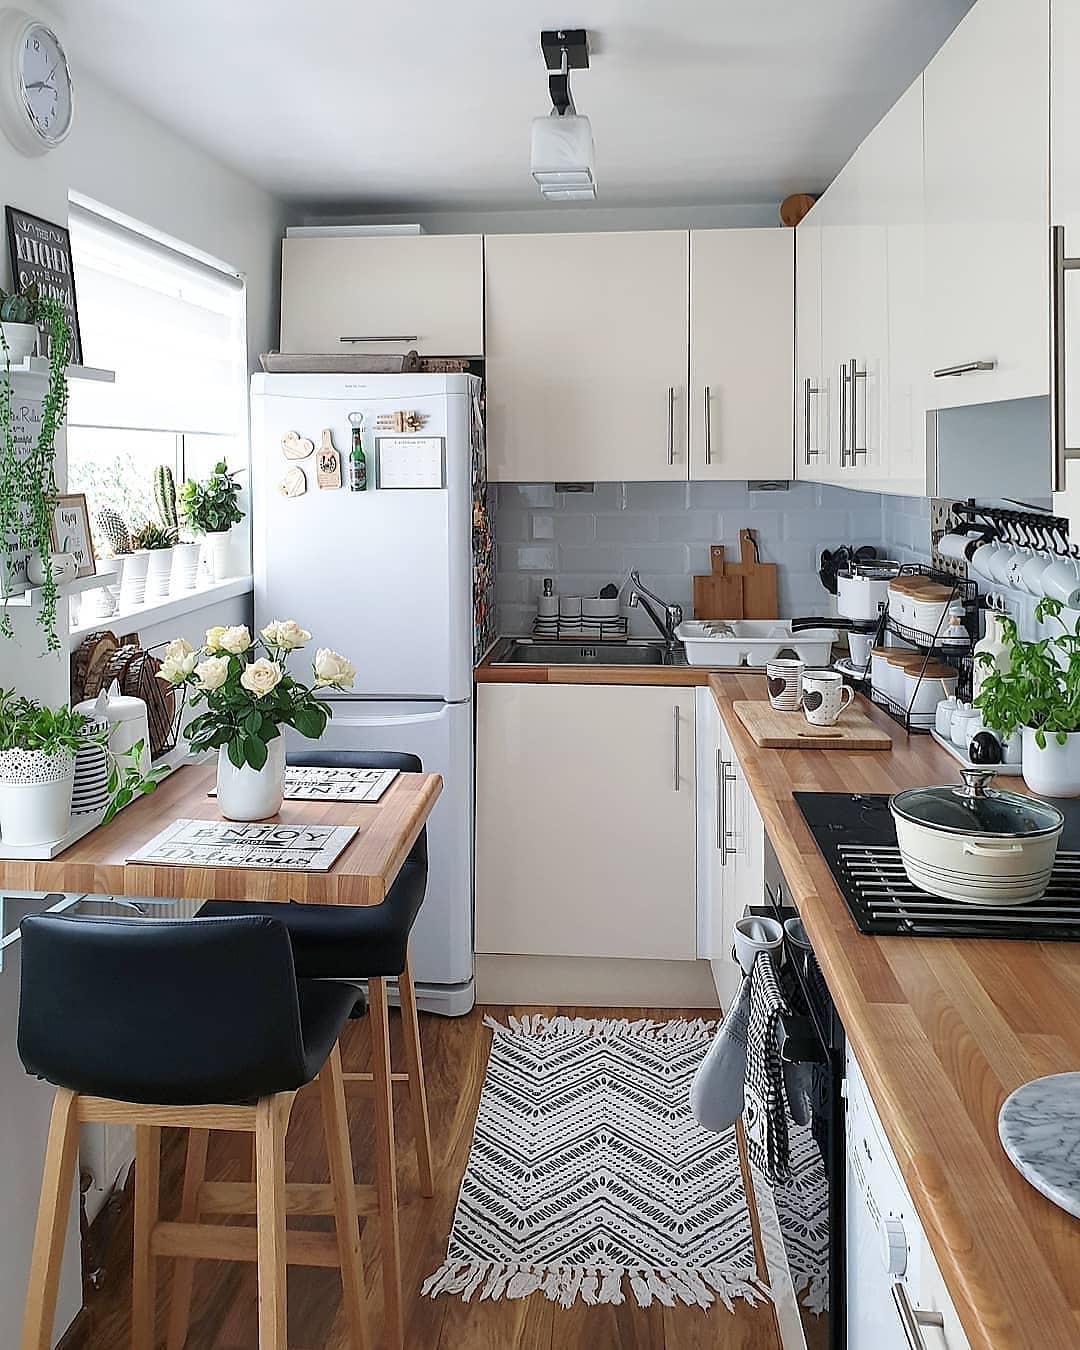 Desain Interior Dapur Minimalis Dengan Warna Warna Netral Berpadu Dengan Aksen Kayu Inspirasi Desain Rumah Terkini